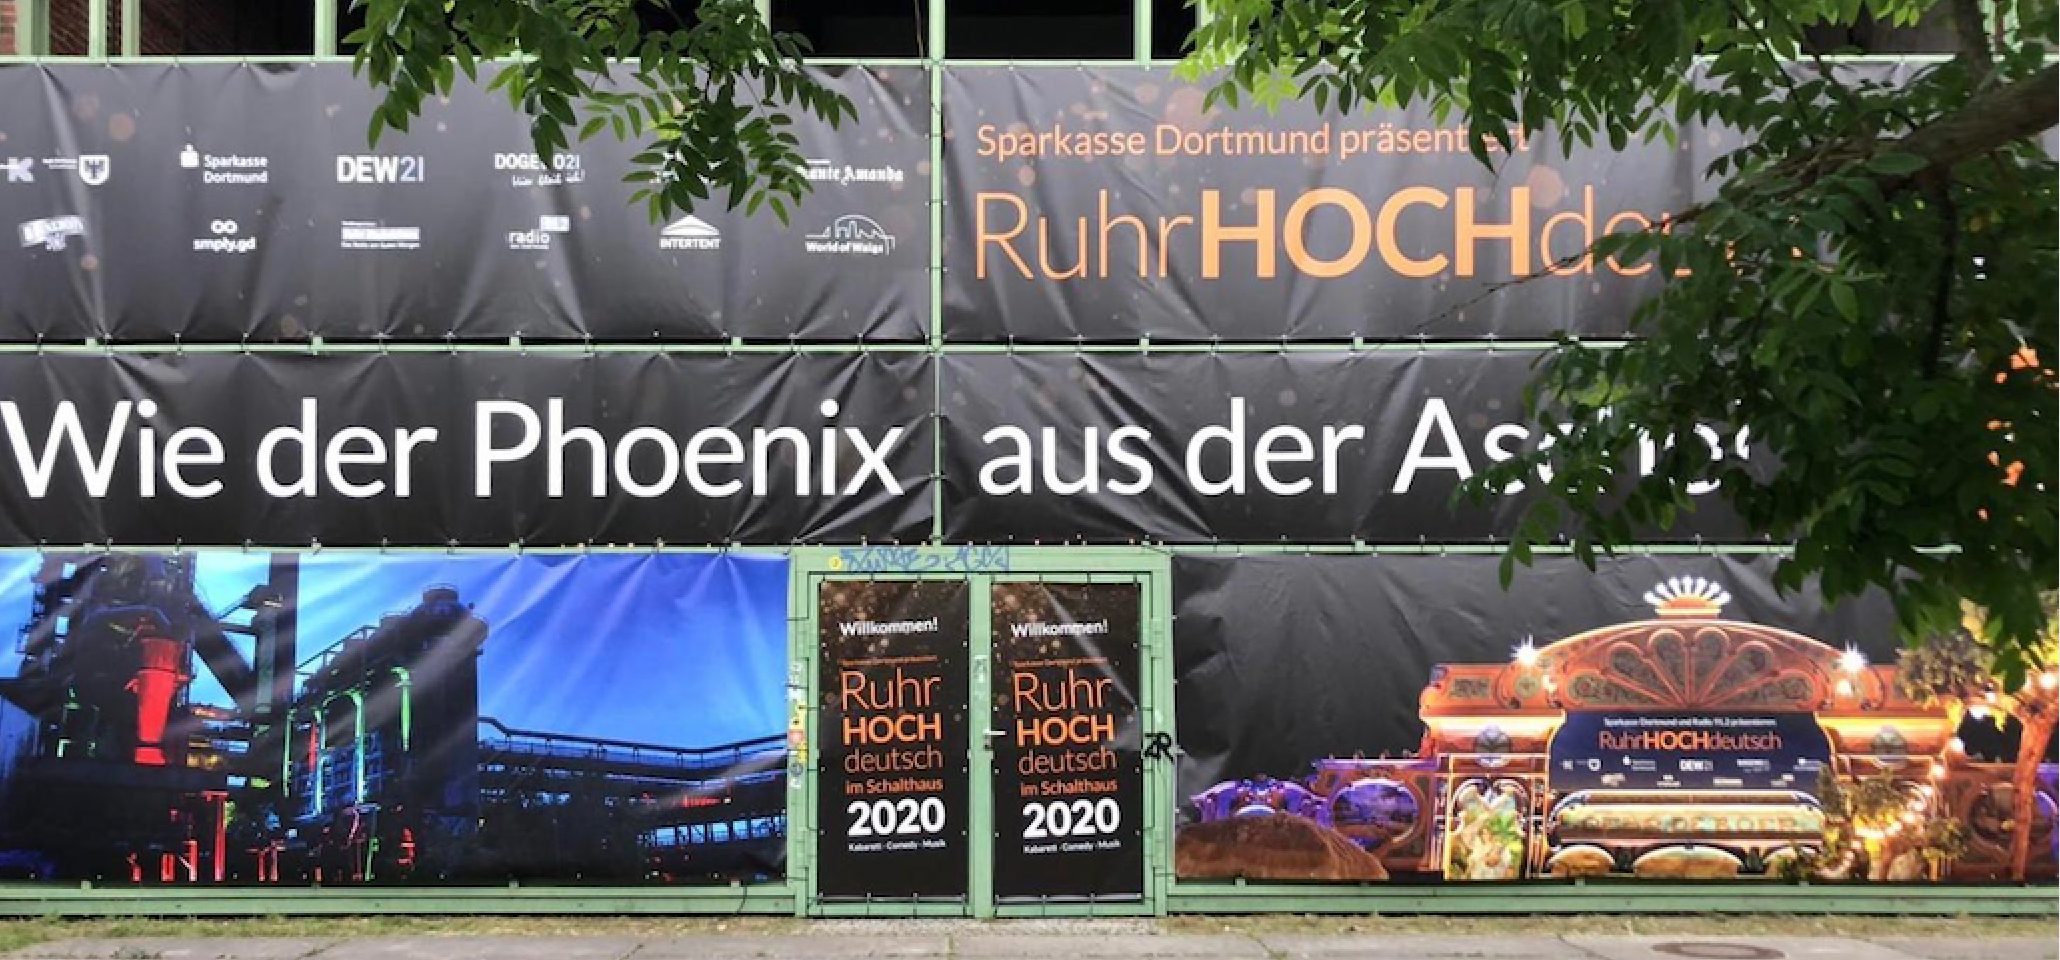 Intertent Zeltverleih aus NRW baut Eventlocation für RuhrHOCHdeutsch Festival in Schalthalle 101 auf Phoenix West in Dortmund